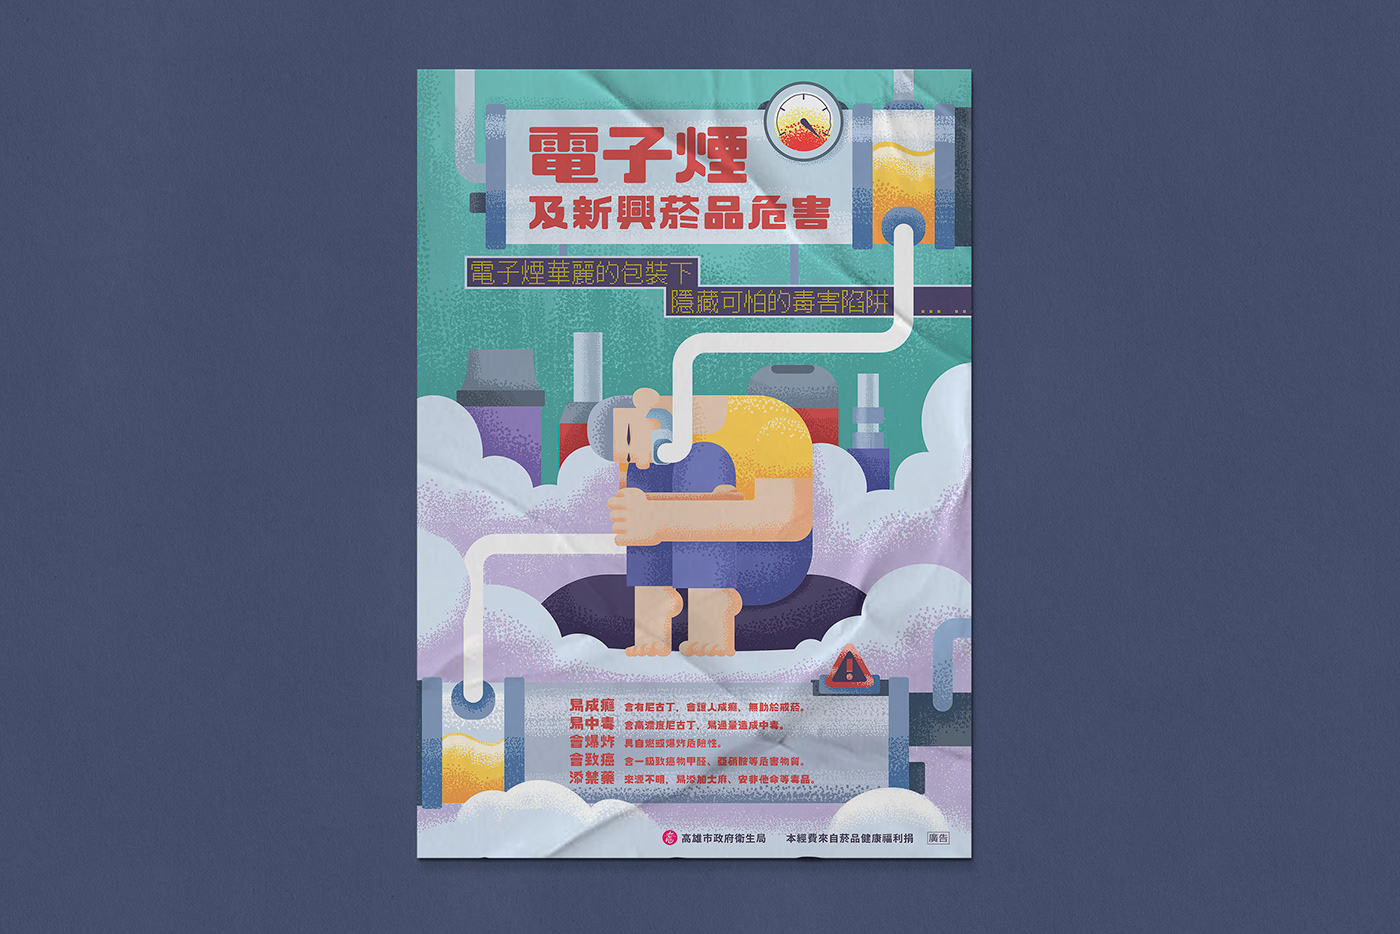 高雄市政府衛生局 電子煙防治海報設計 Poster Design Behance